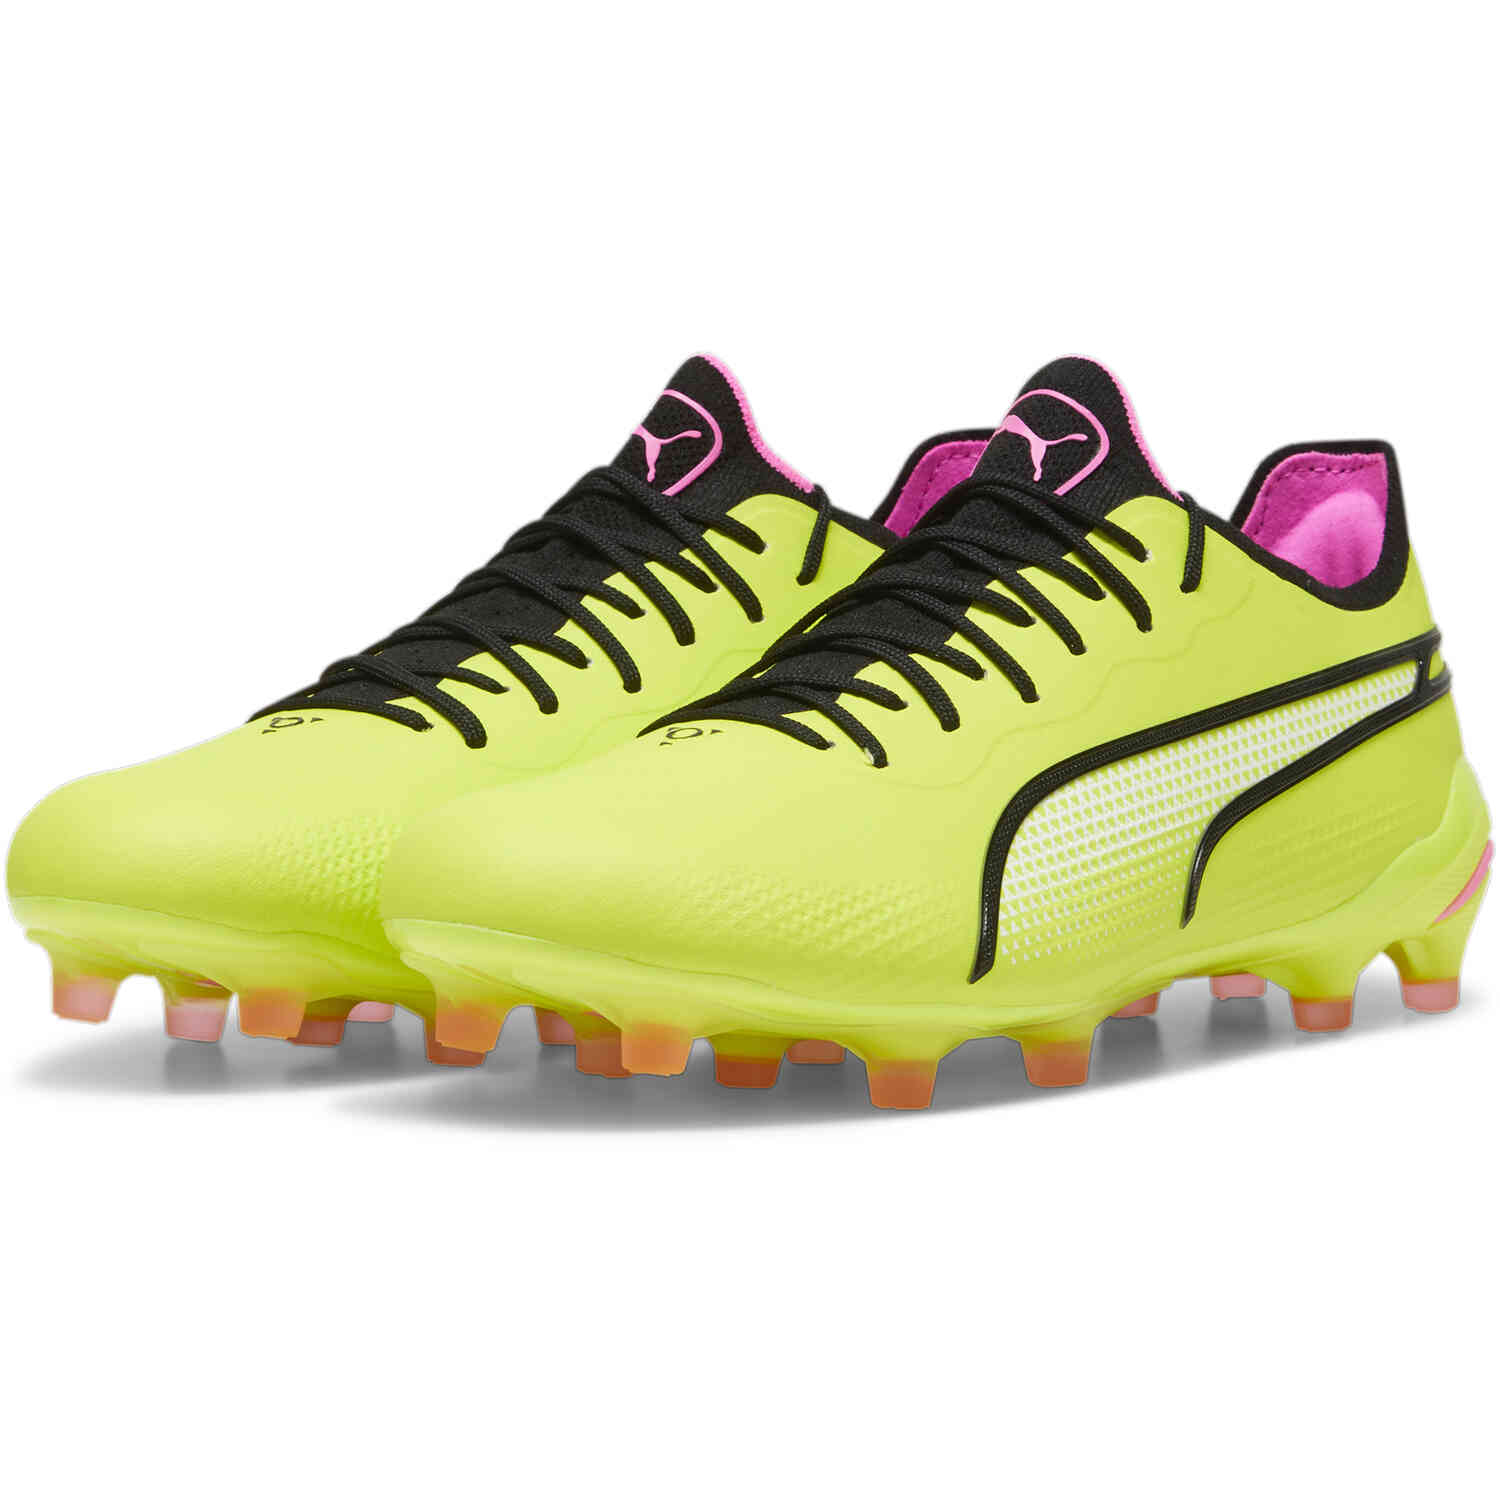 Puma Soccer Shoes - Puma Future and Puma ONE - SoccerPro.com